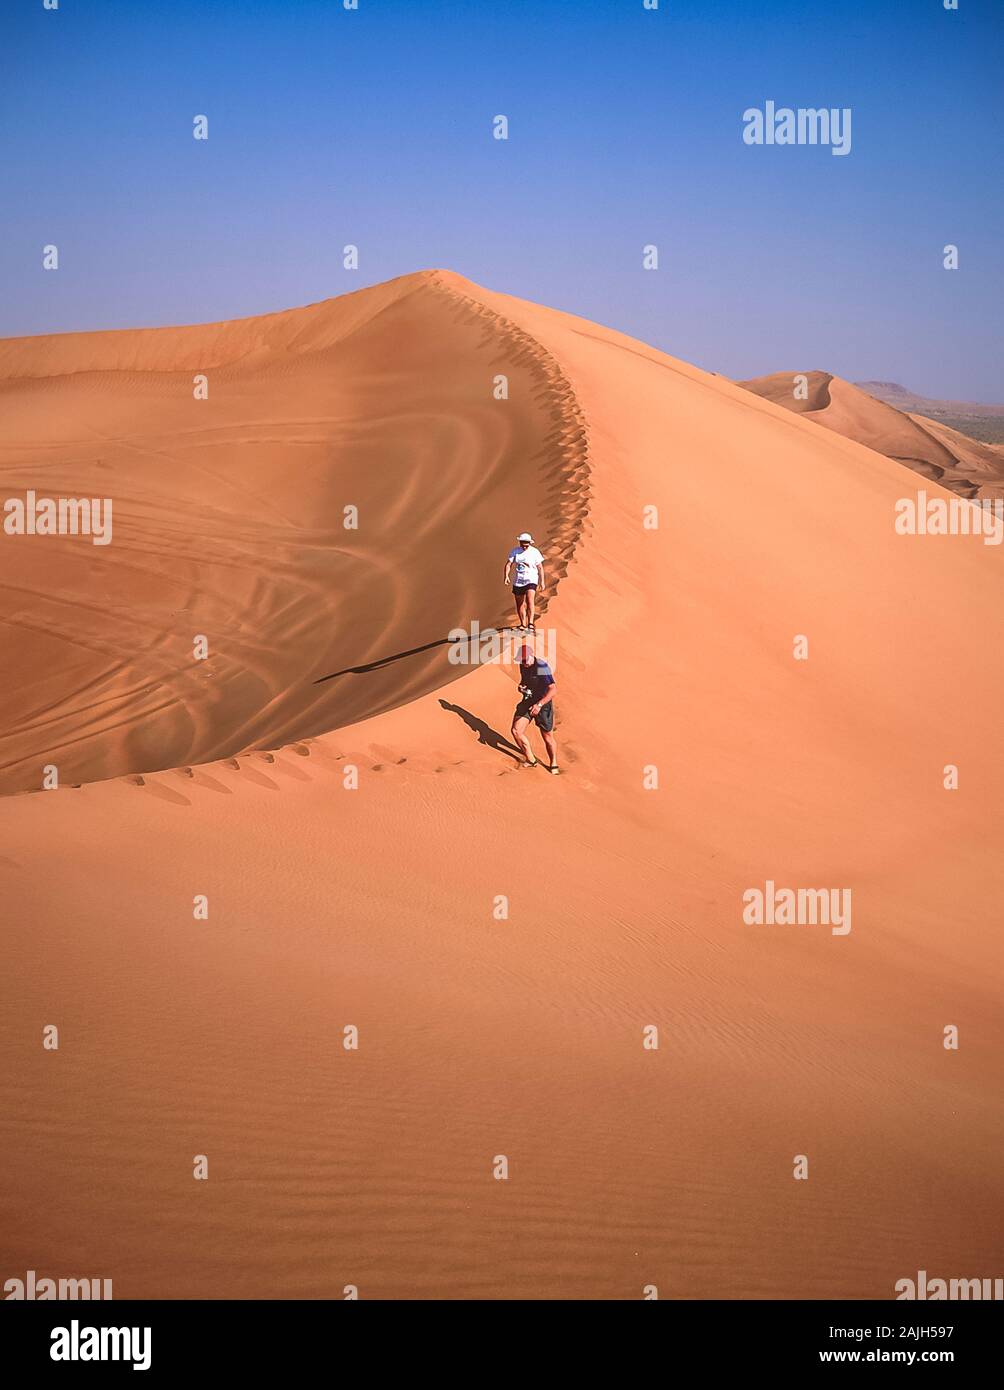 Dubai. Die europäischen Touristen genießen die wunderschöne Wüstenlandschaft von natürlichen, von Wind verwehten Sanddünen in der Nähe des Dorfes Al Dhaid am Straßenrand zwischen der Stadt Dubai und der ländlichen Festung Oasis Hatta Stockfoto